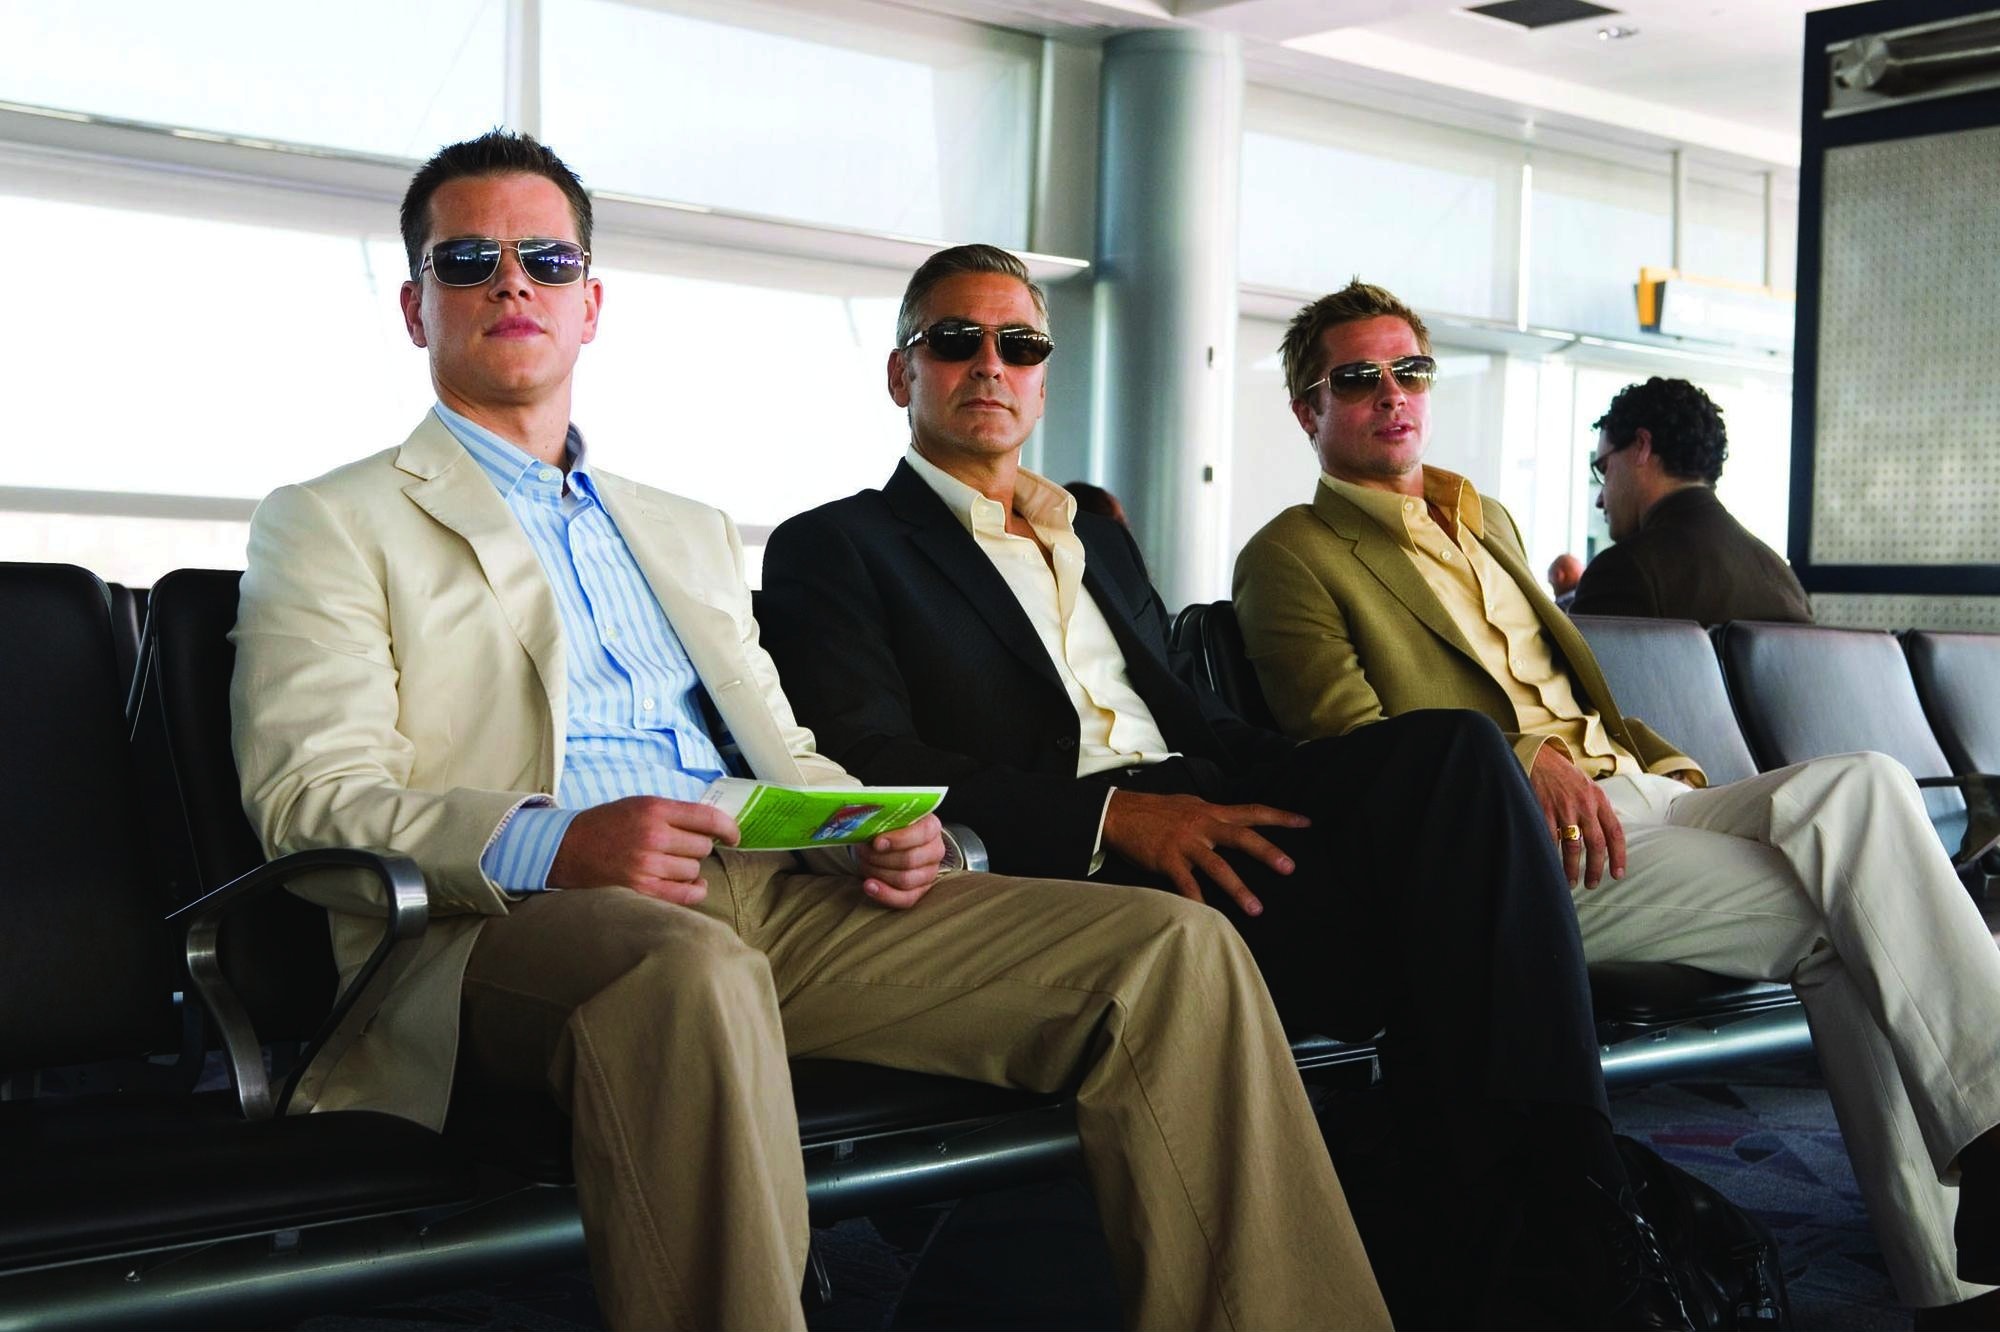 Still of Brad Pitt, George Clooney and Matt Damon in Ocean's Thirteen (2007)